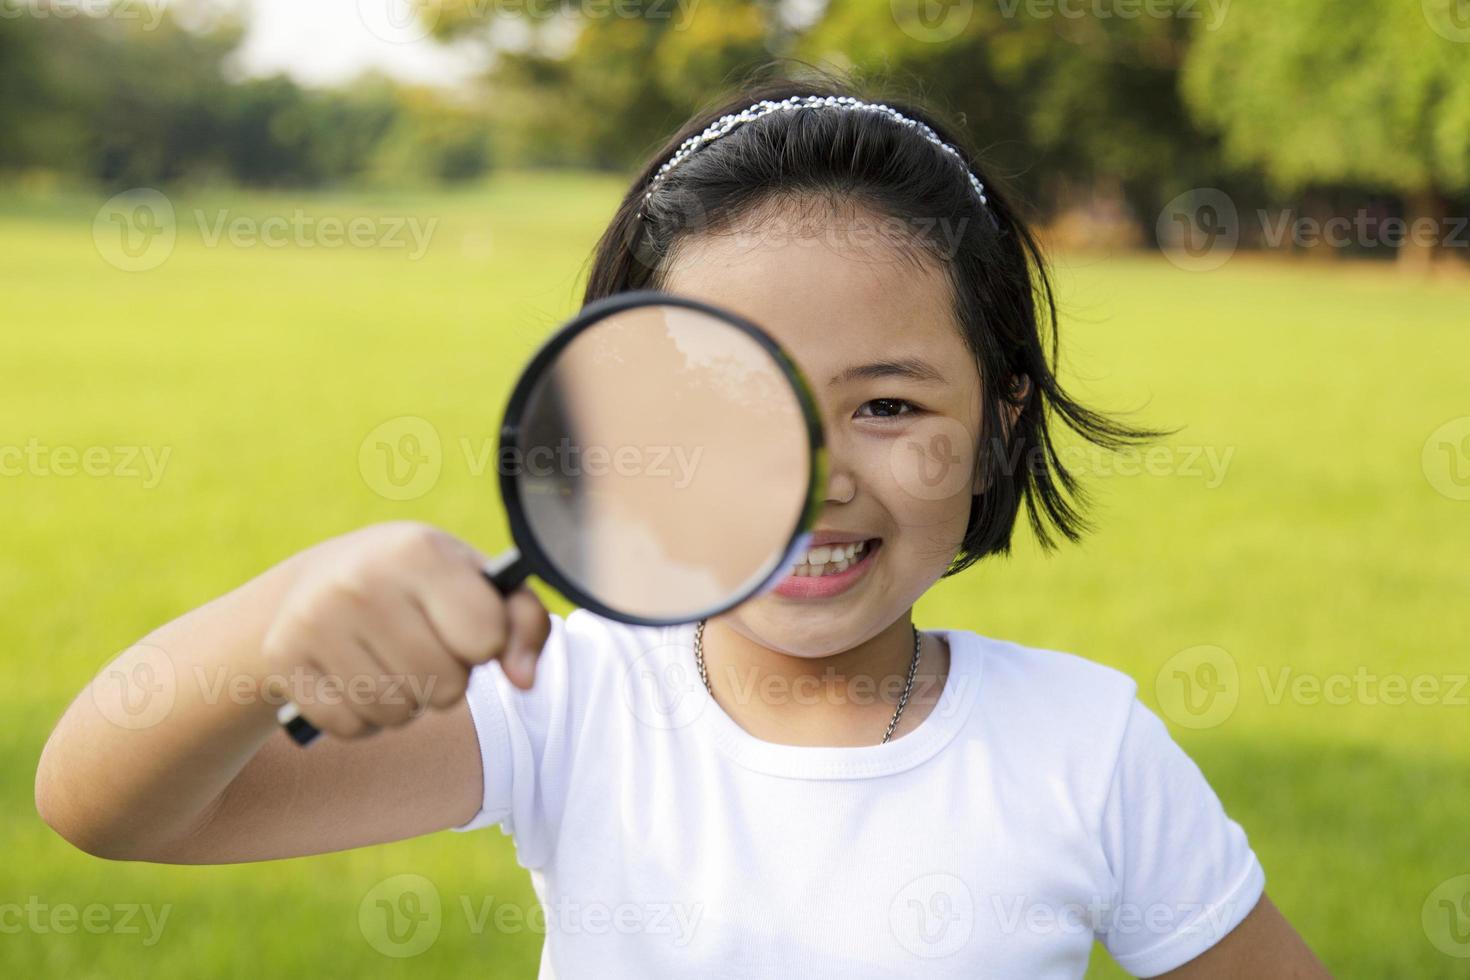 bambina asiatica che tiene una lente d'ingrandimento all'aperto foto